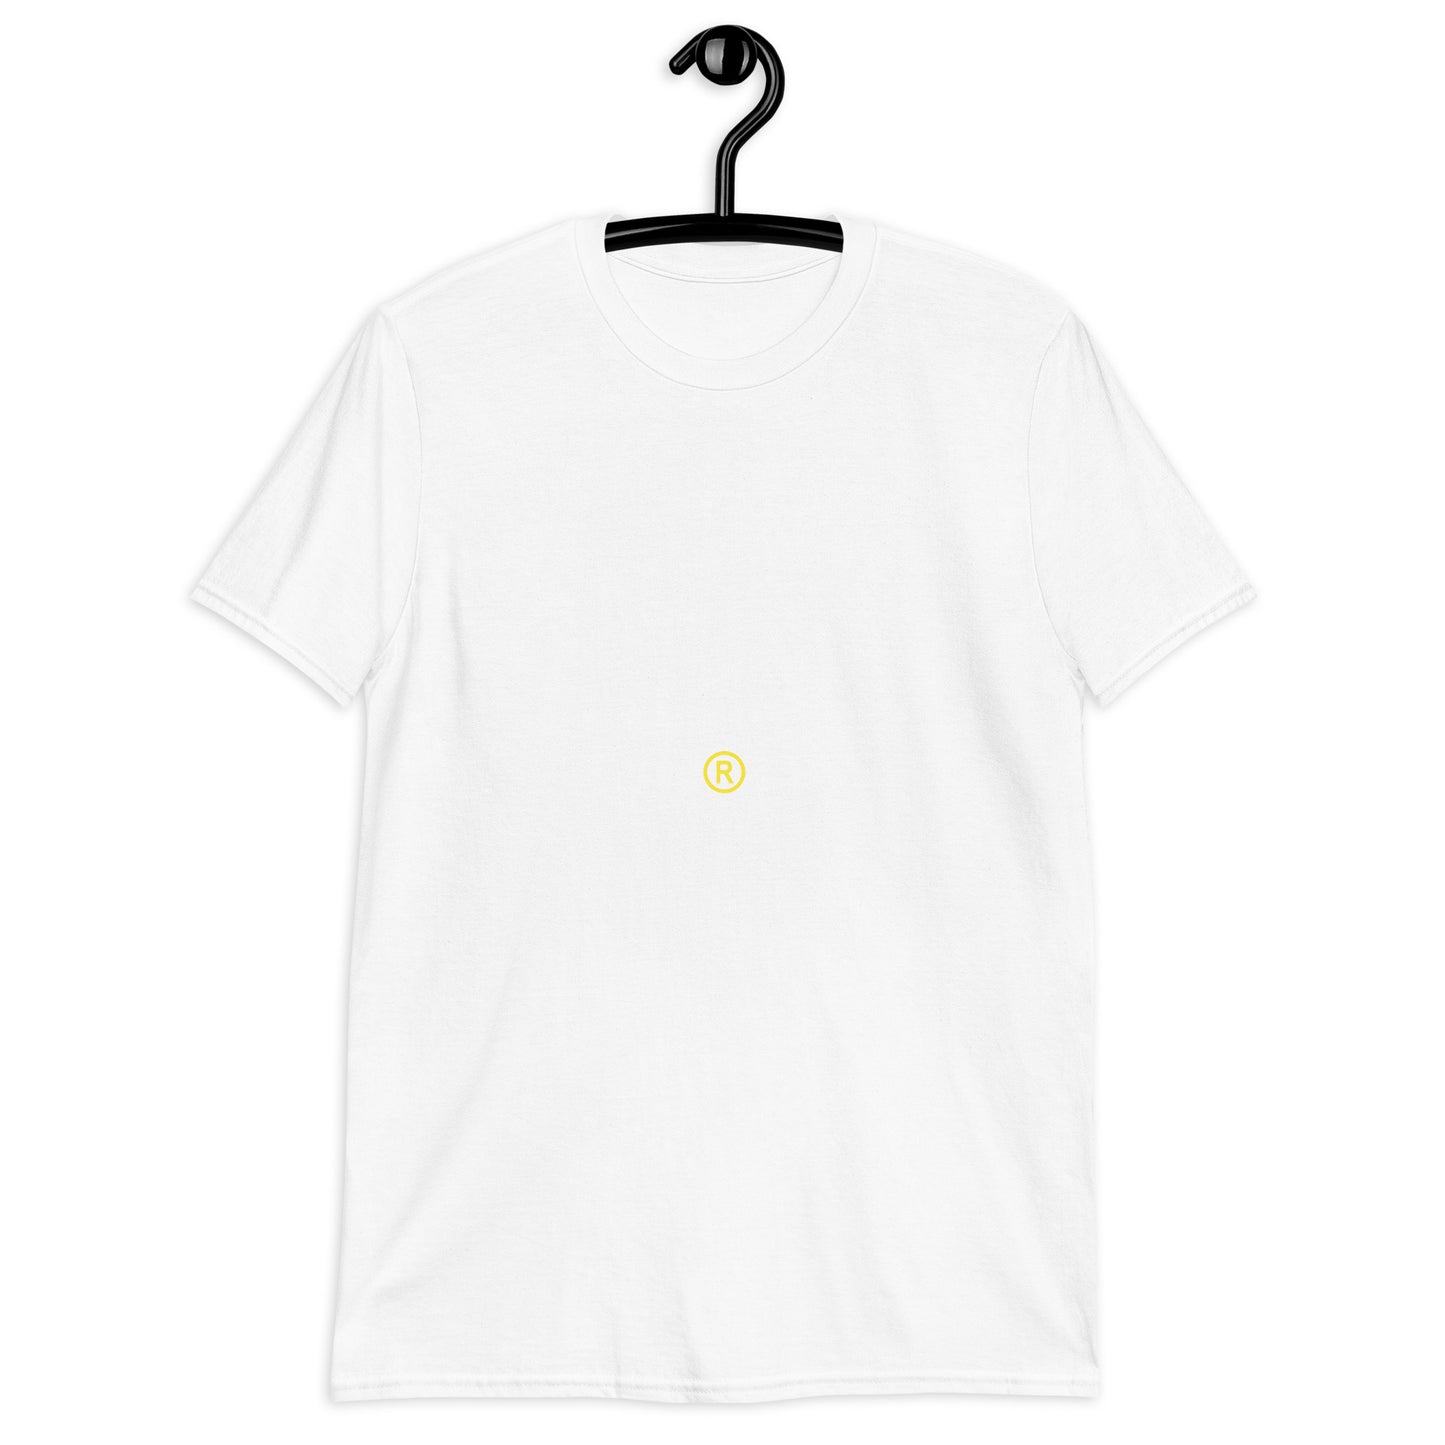 Organic Negrow T-Shirt / Kyrie Irving Short-Sleeve Unisex T-Shirt